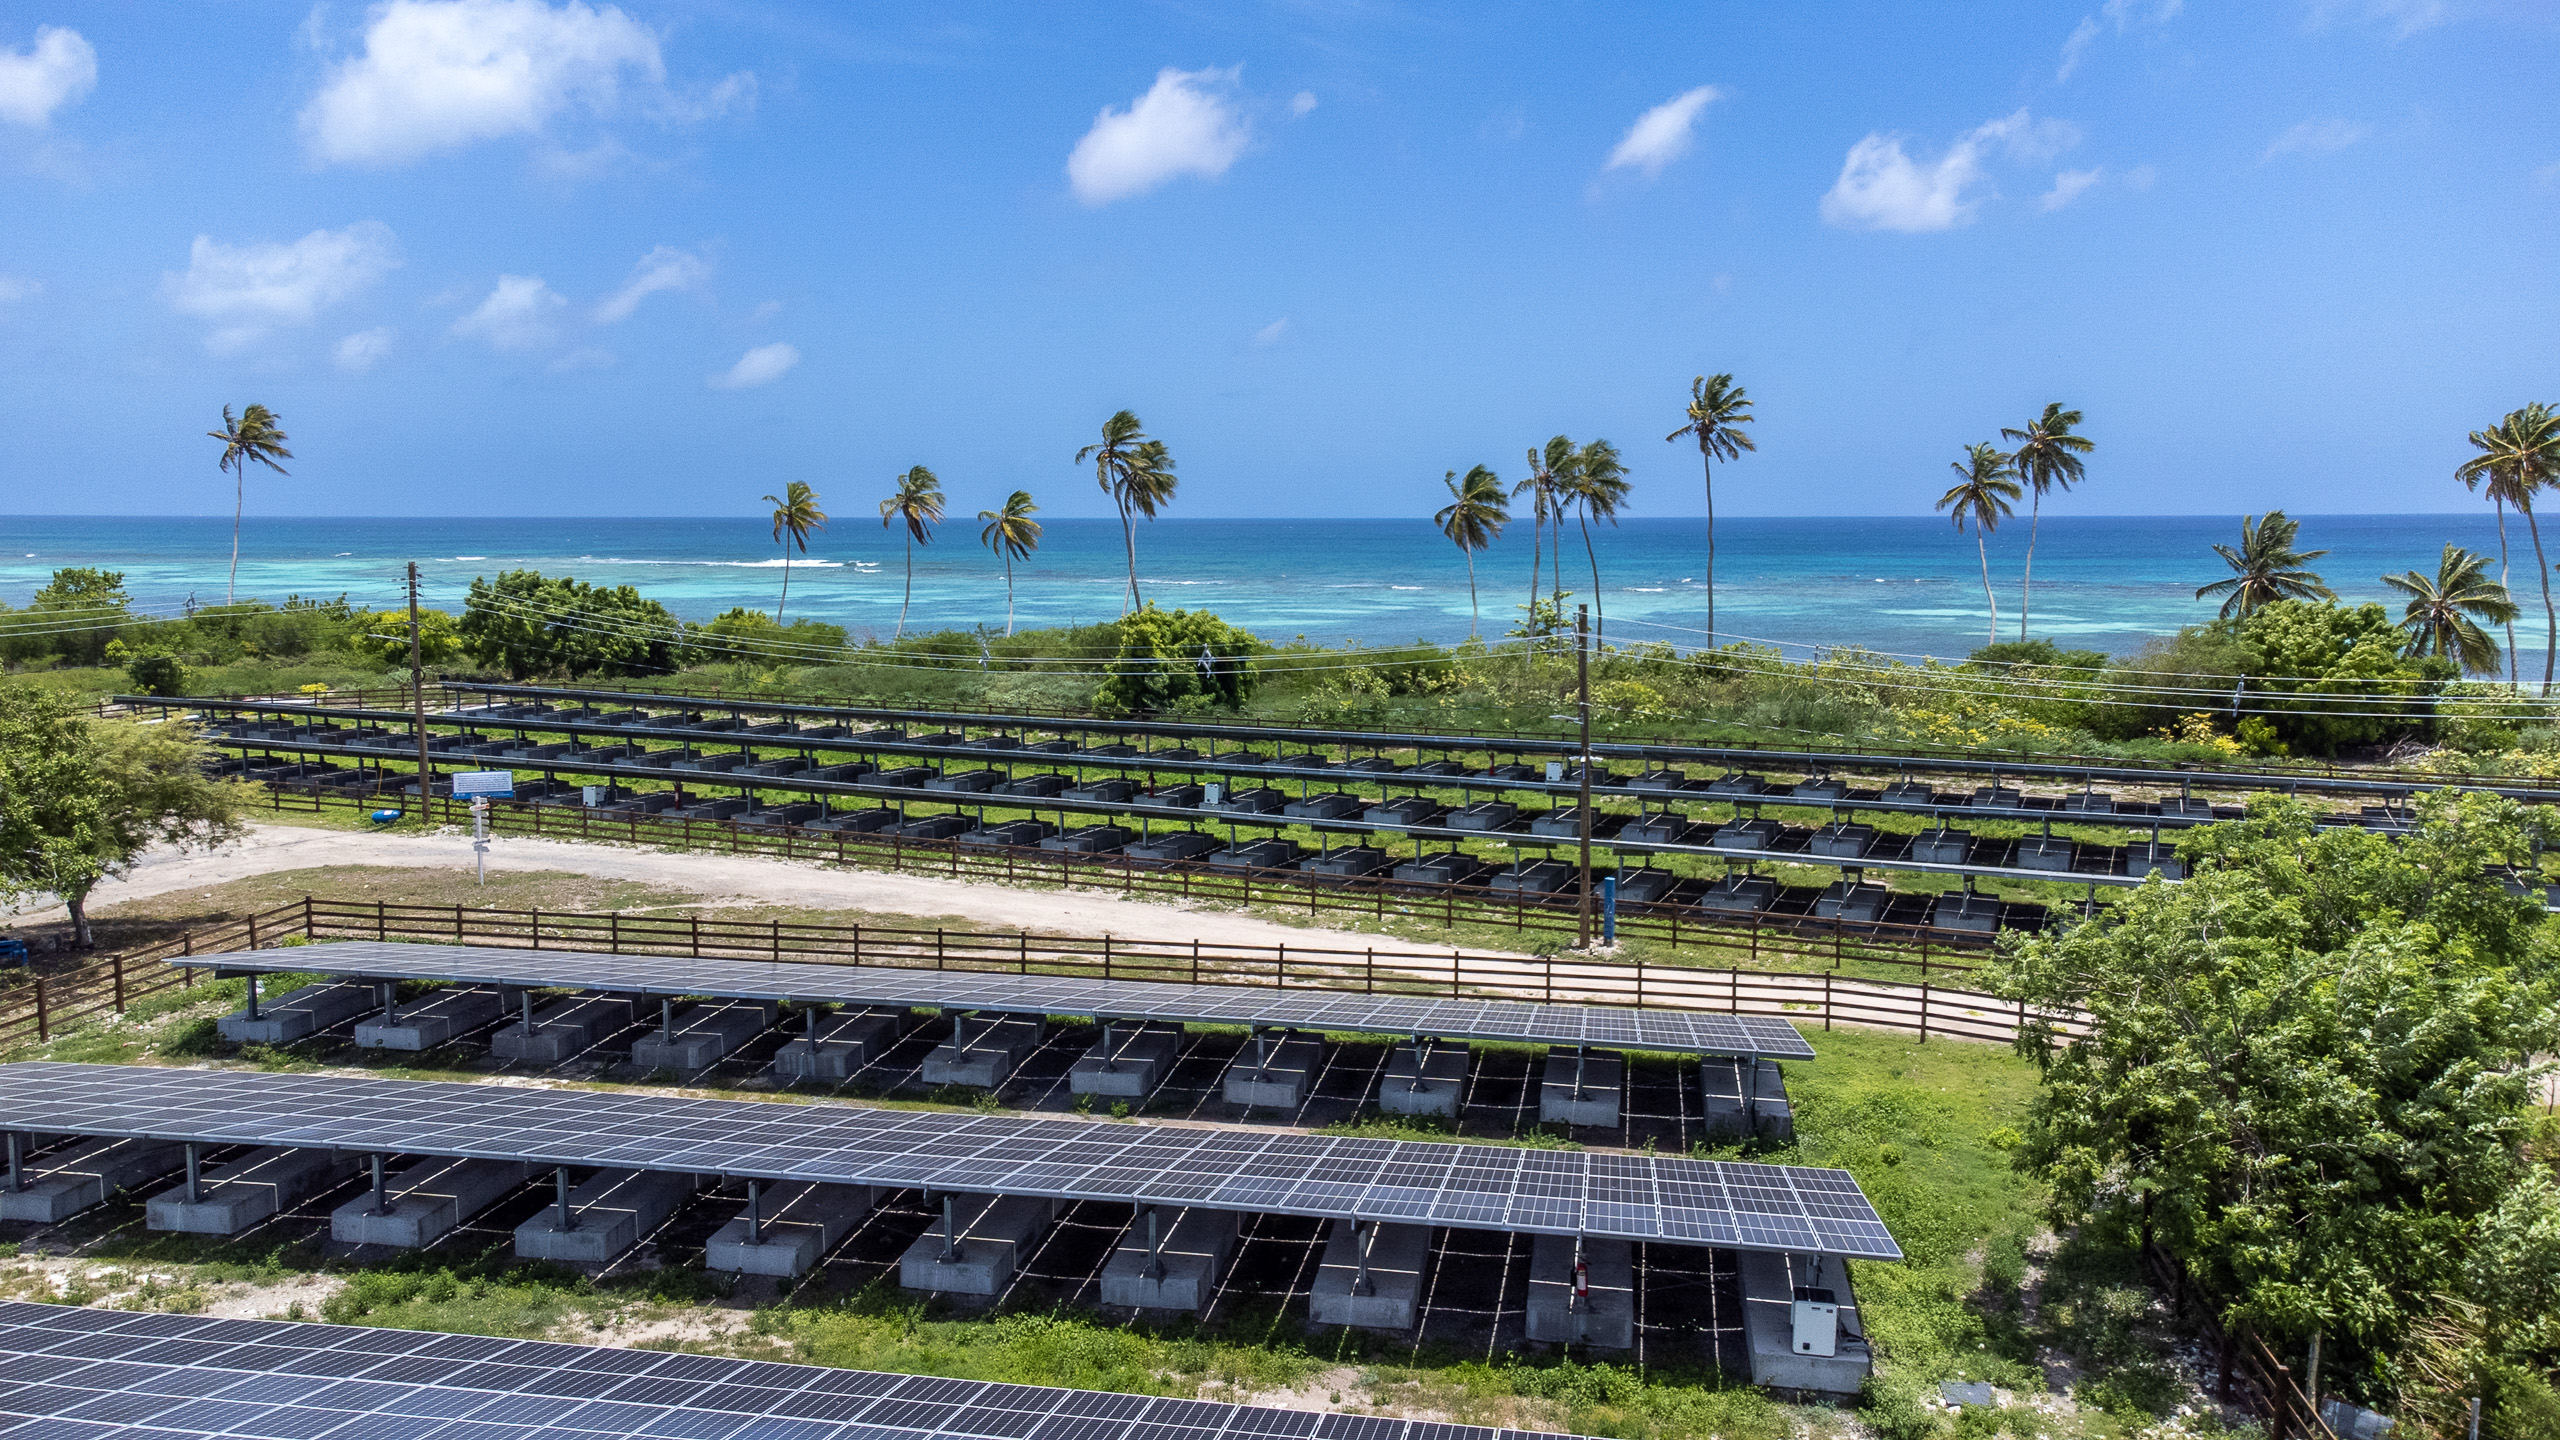 hileras de paneles solares con cocoteros alrededor y el mar de fondo